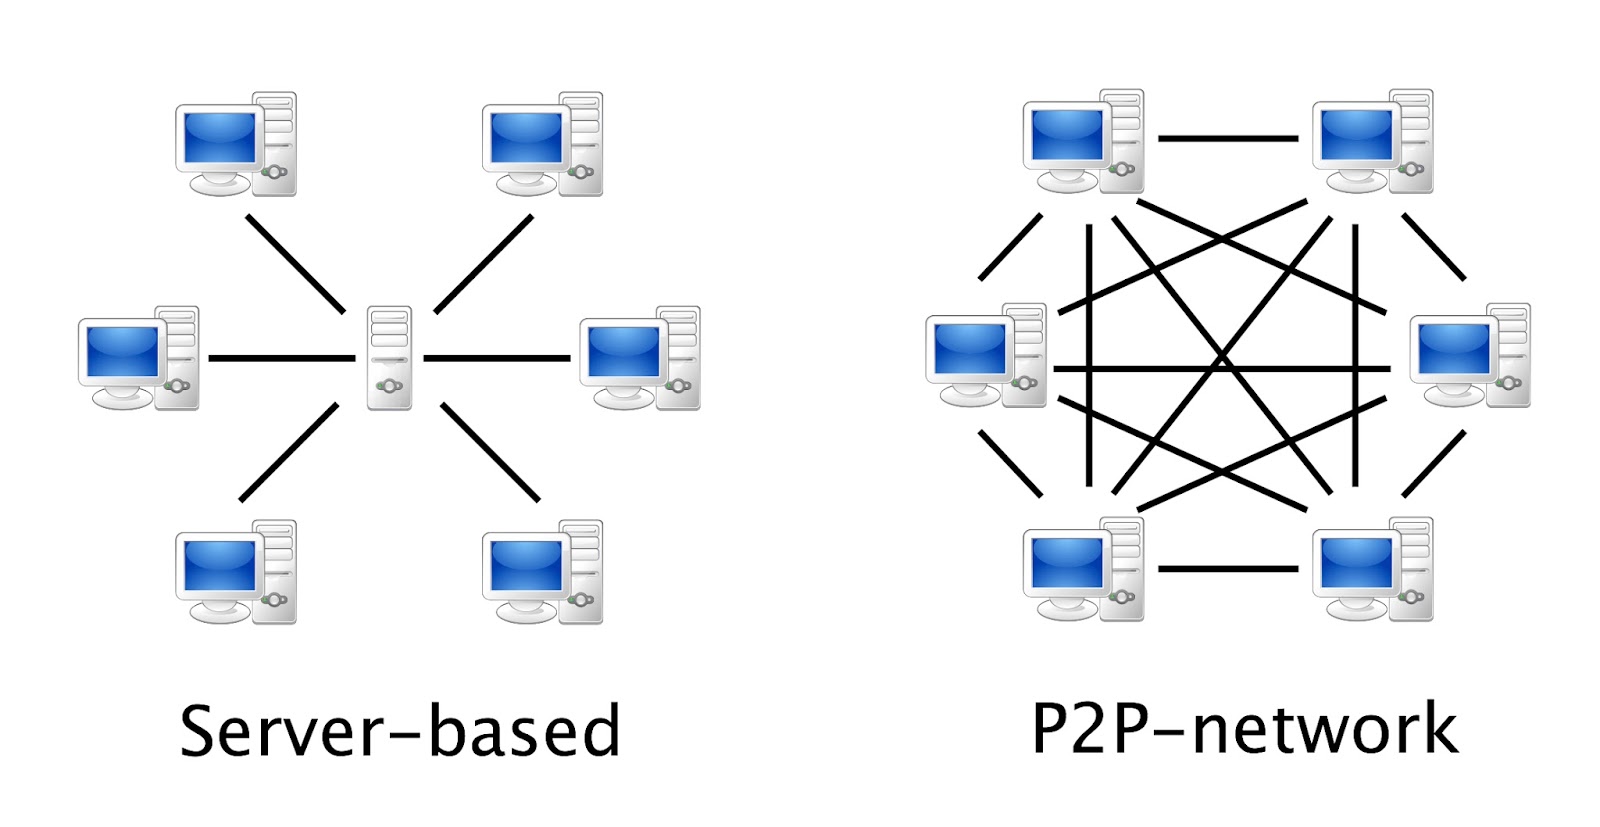 p2p-network-vs-server.jpg